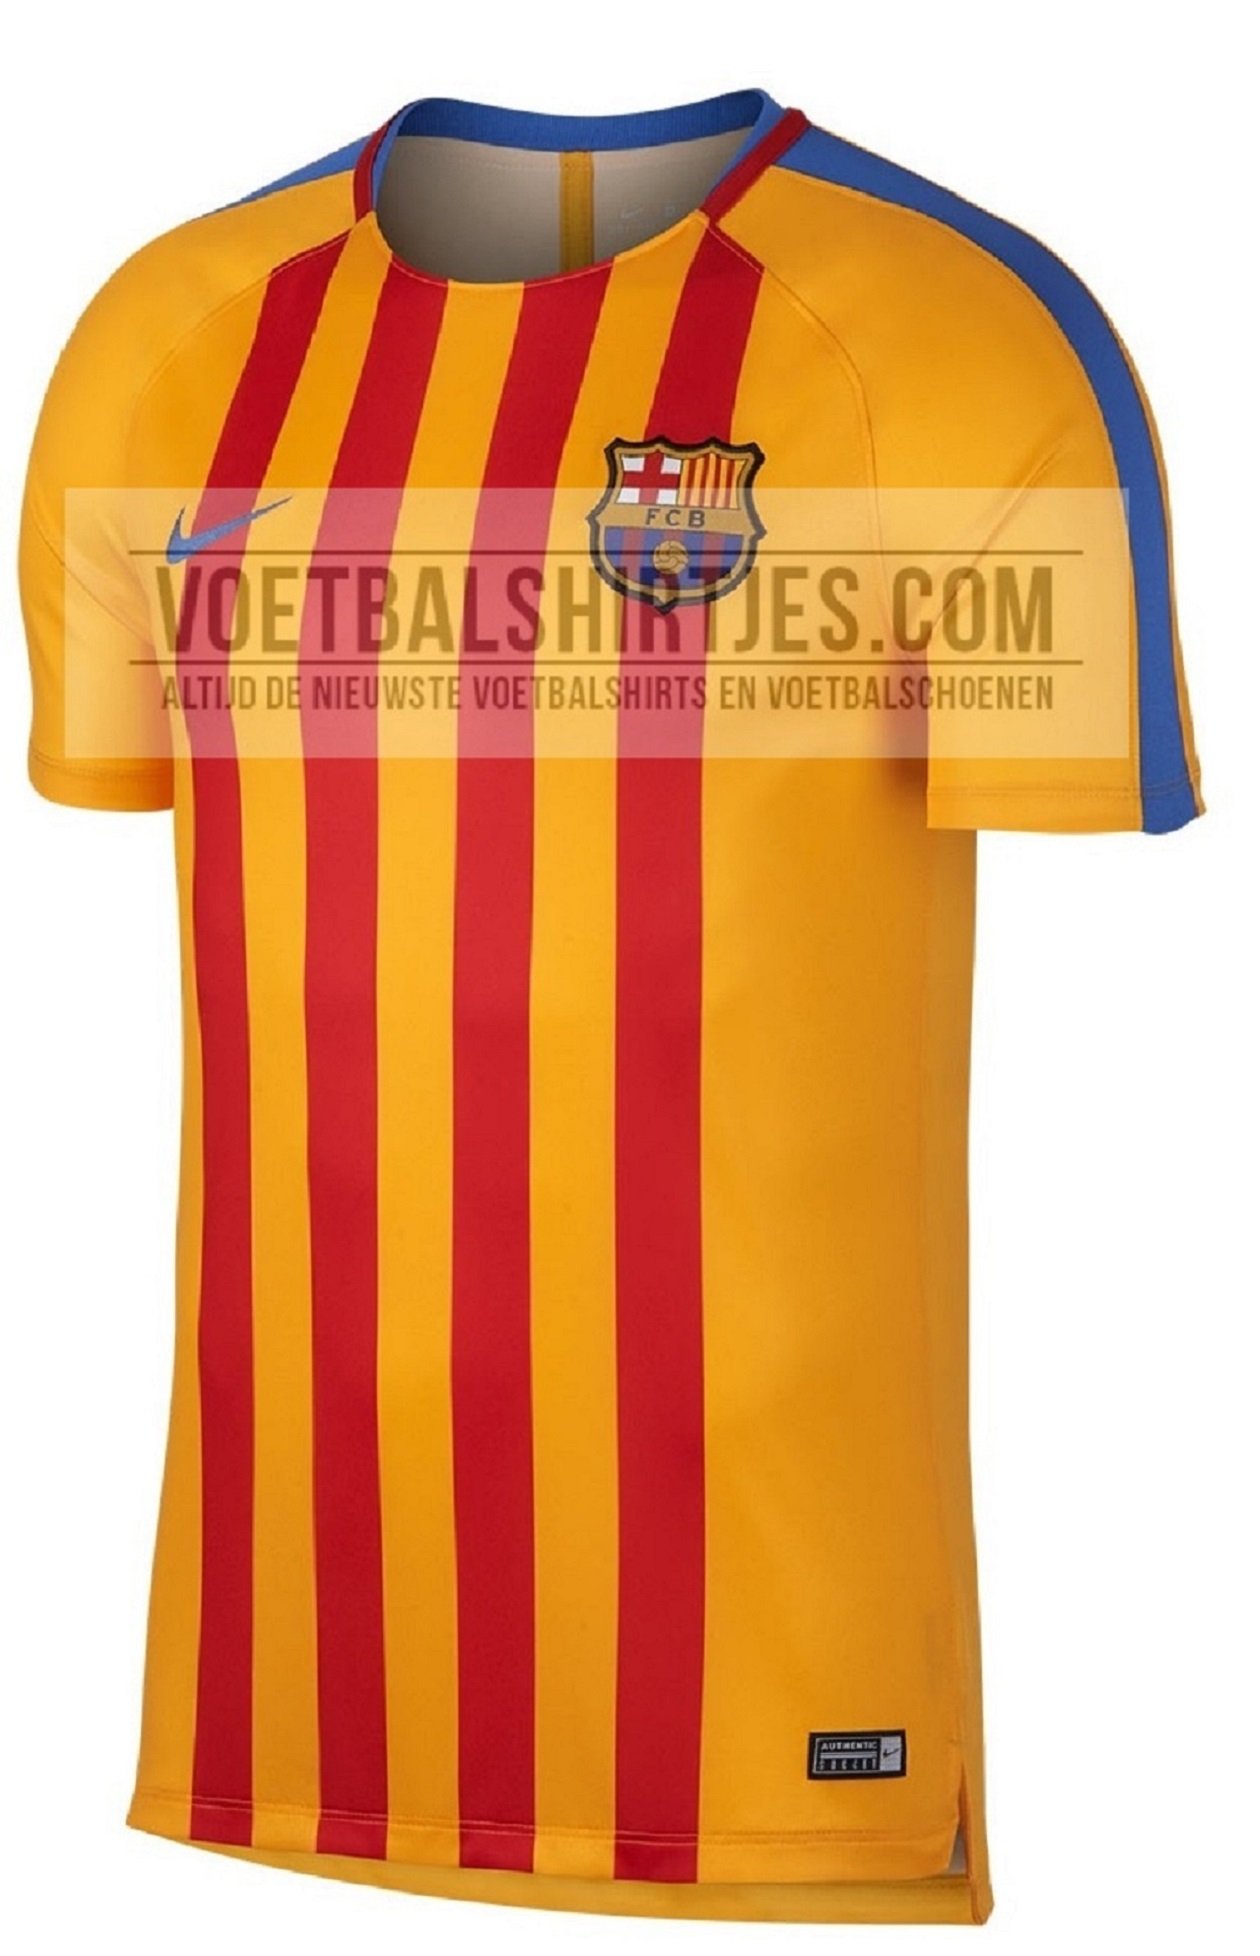 La samarreta de la senyera tornarà al Barça